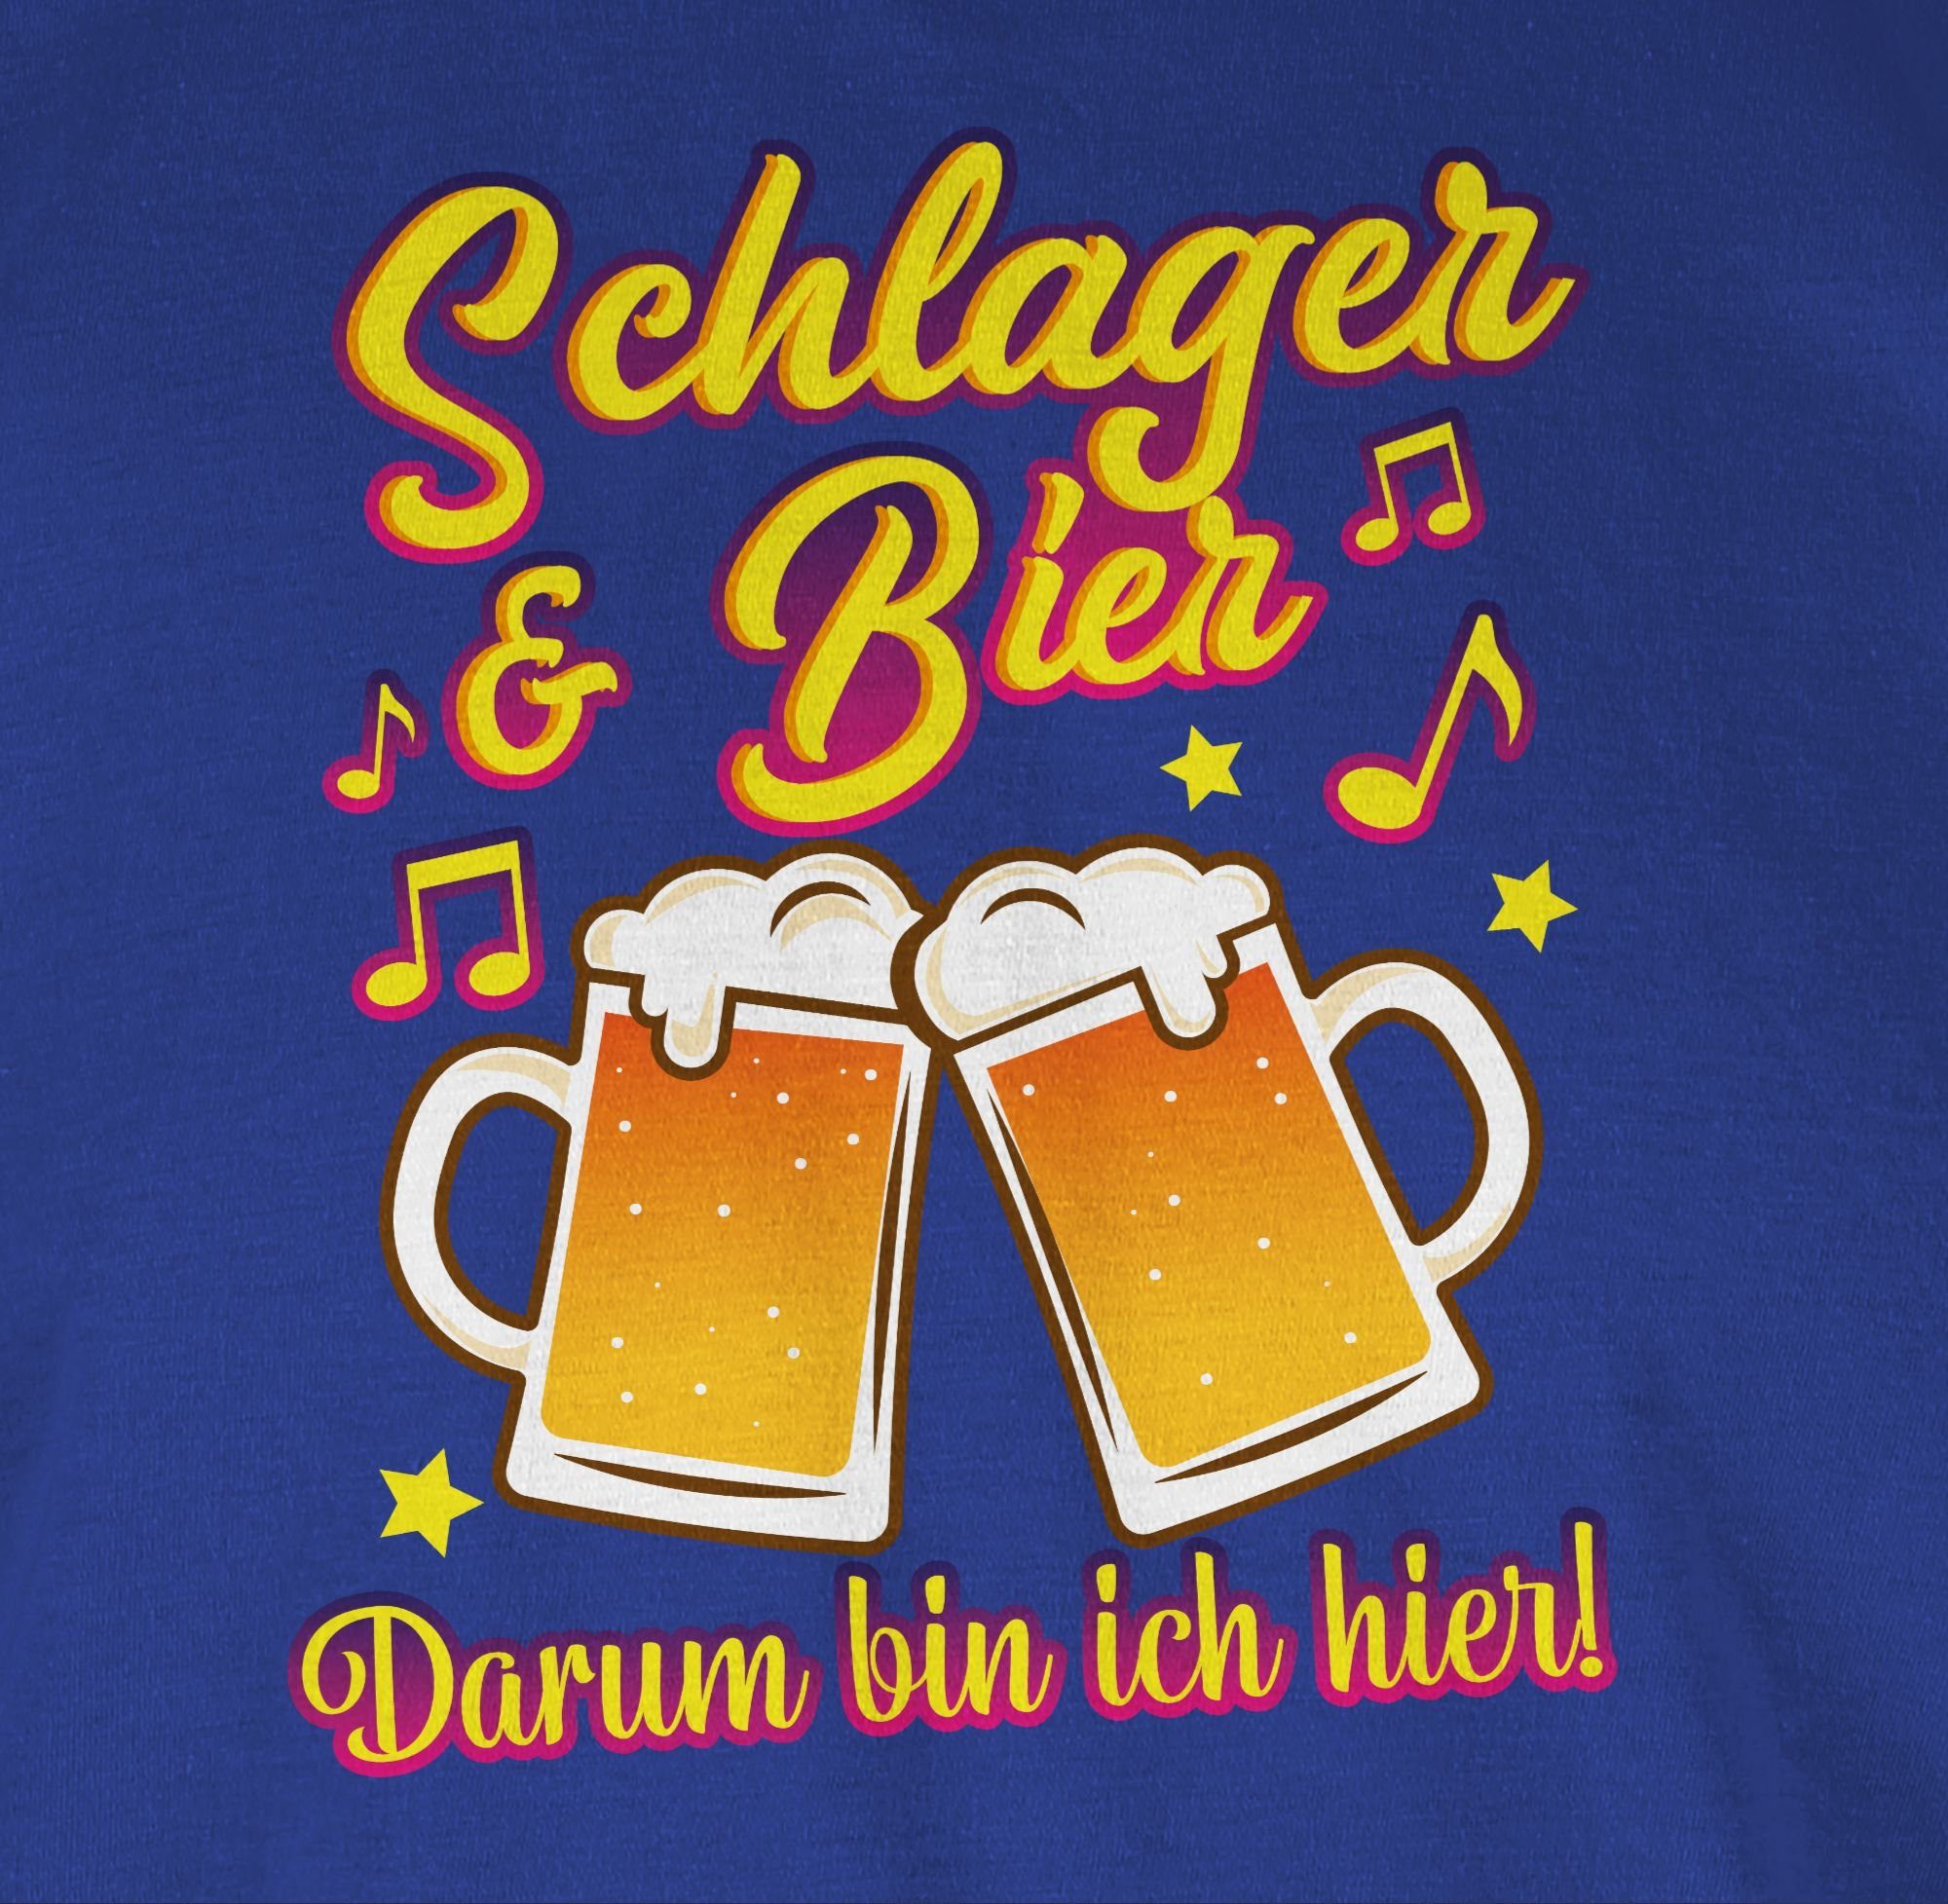 Bier bin Royalblau Schlager Shirtracer Schlager ich & Party Outfit T-Shirt darum 02 hier!